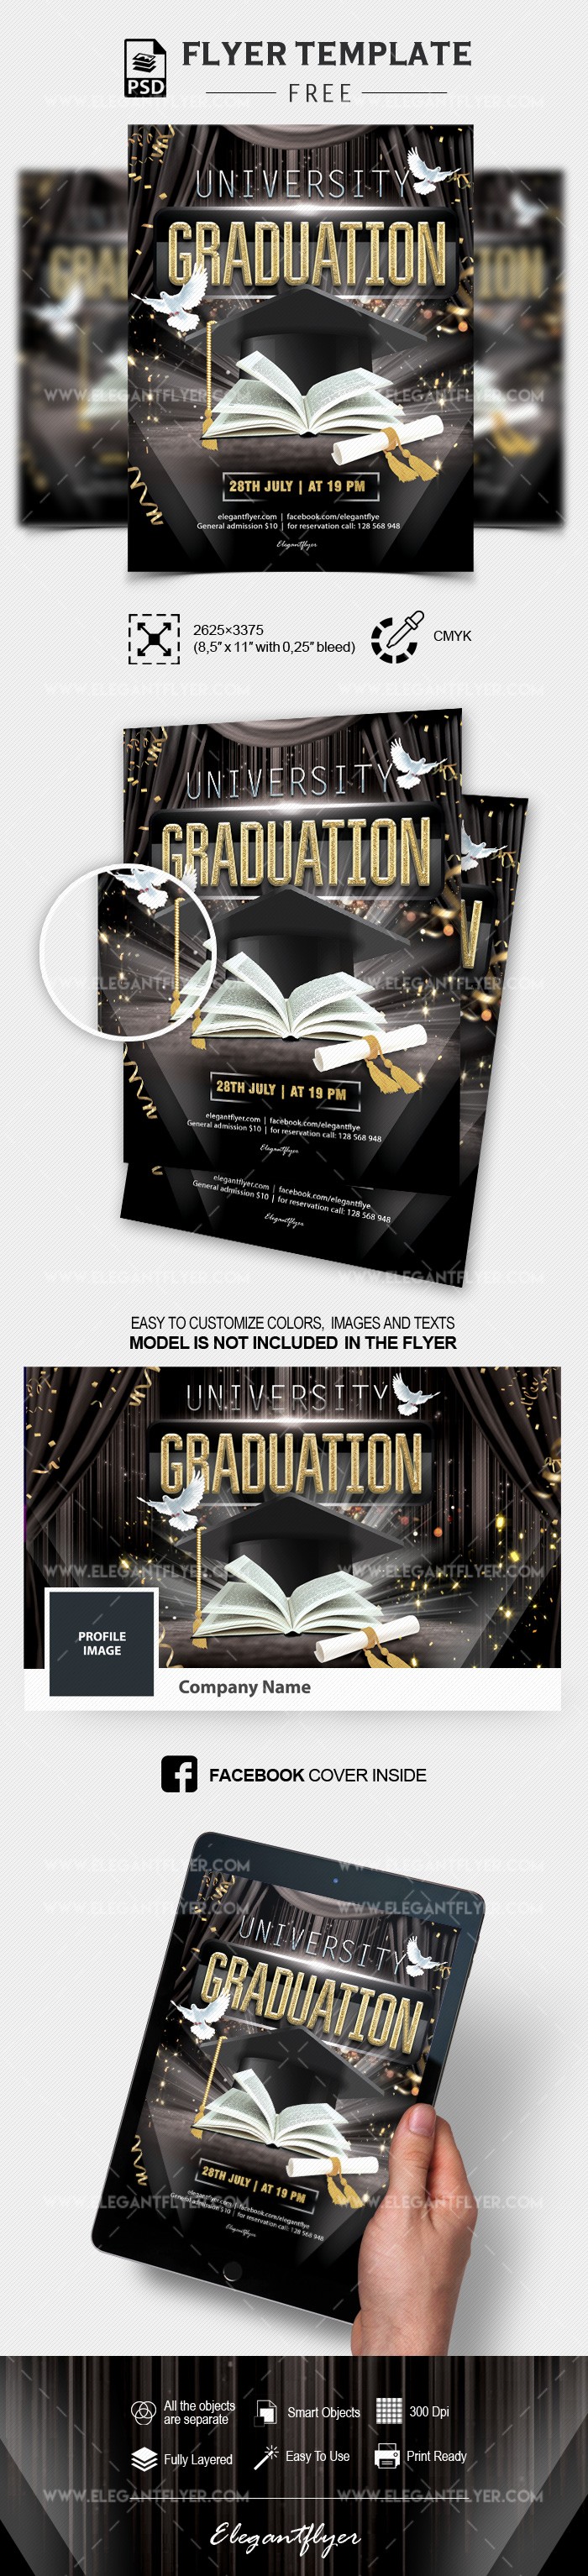 Graduación universitaria by ElegantFlyer